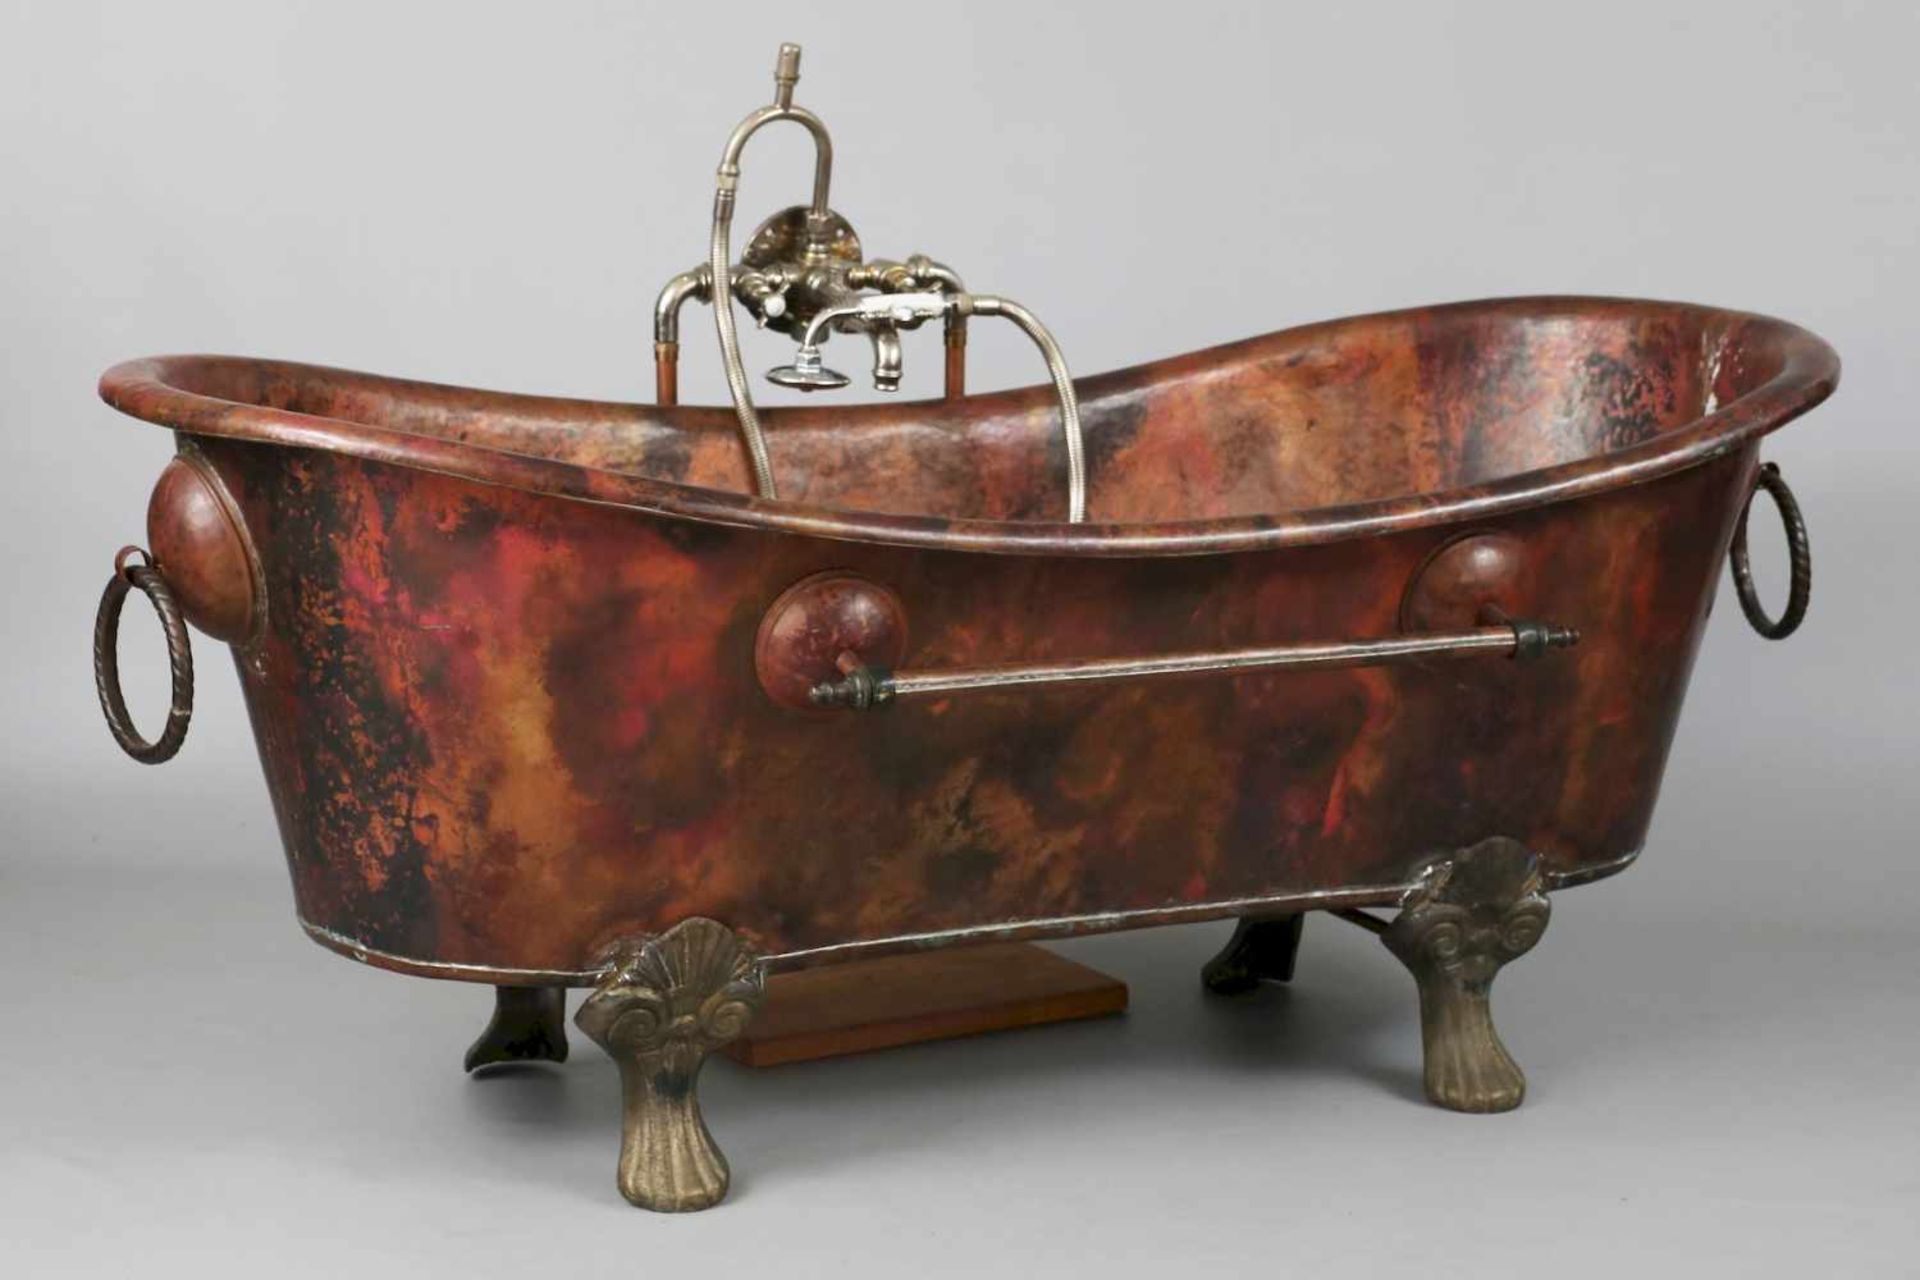 Kupfer-Badewanne im Stile des 19. Jahrhundertsovaler, schiffchenförmiger Korpus mit überkragendem